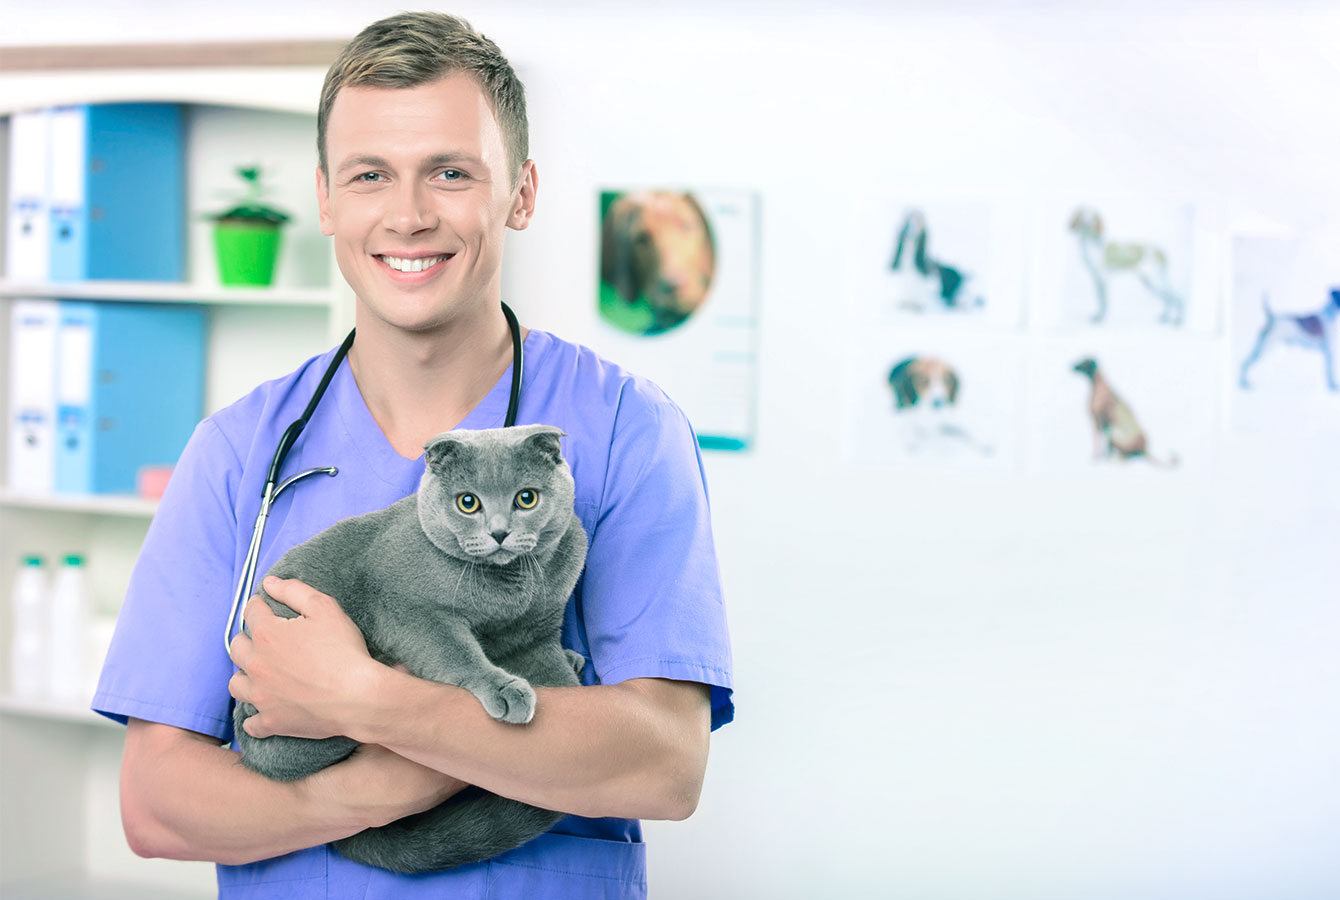 Férfi állatorvos, aki macskát tart, akinek tulajdonosai a Planfy foglalási rendszer segítségével foglaltak szolgáltatást.